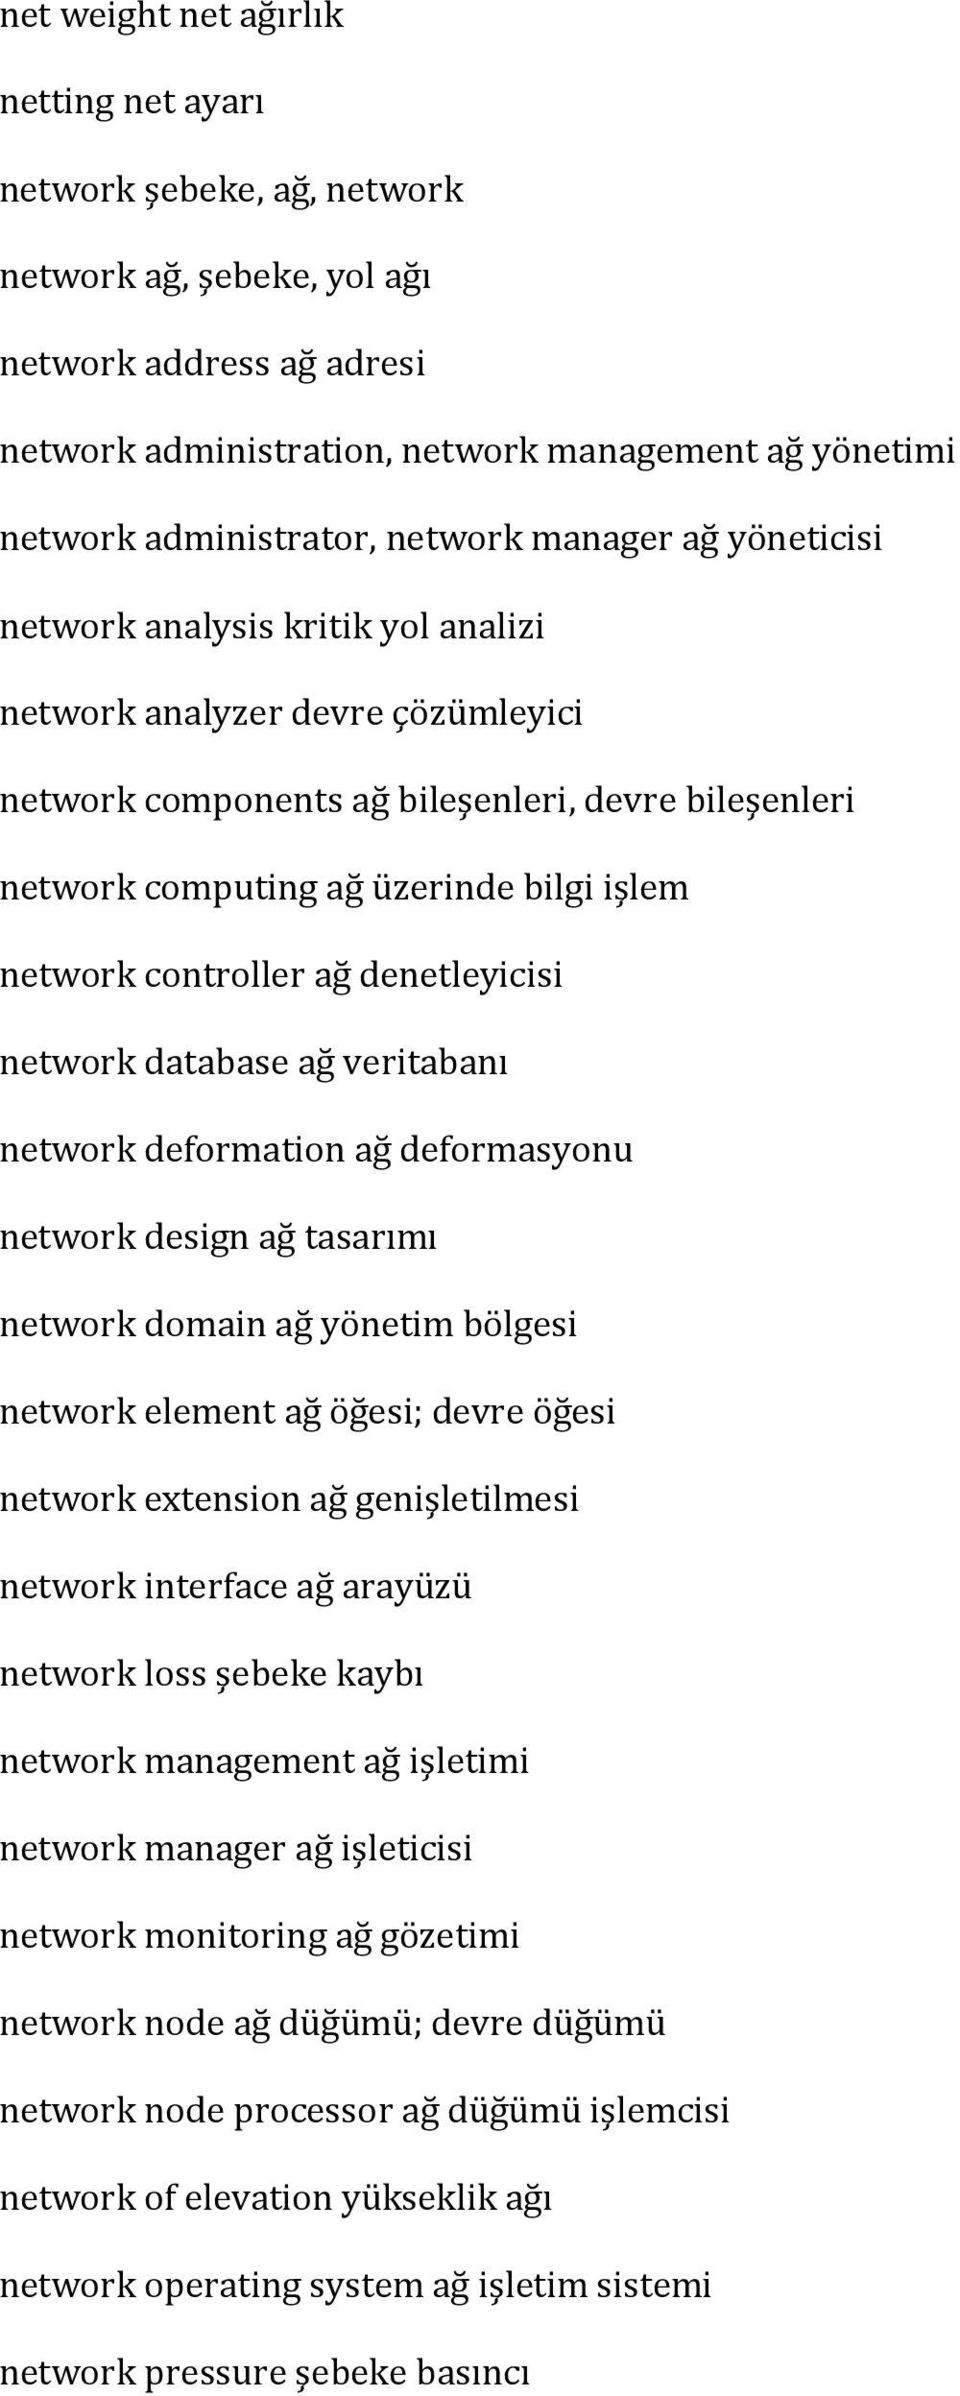 bilgi işlem network controller ağ denetleyicisi network database ağ veritabanı network deformation ağ deformasyonu network design ağ tasarımı network domain ağ yönetim bölgesi network element ağ